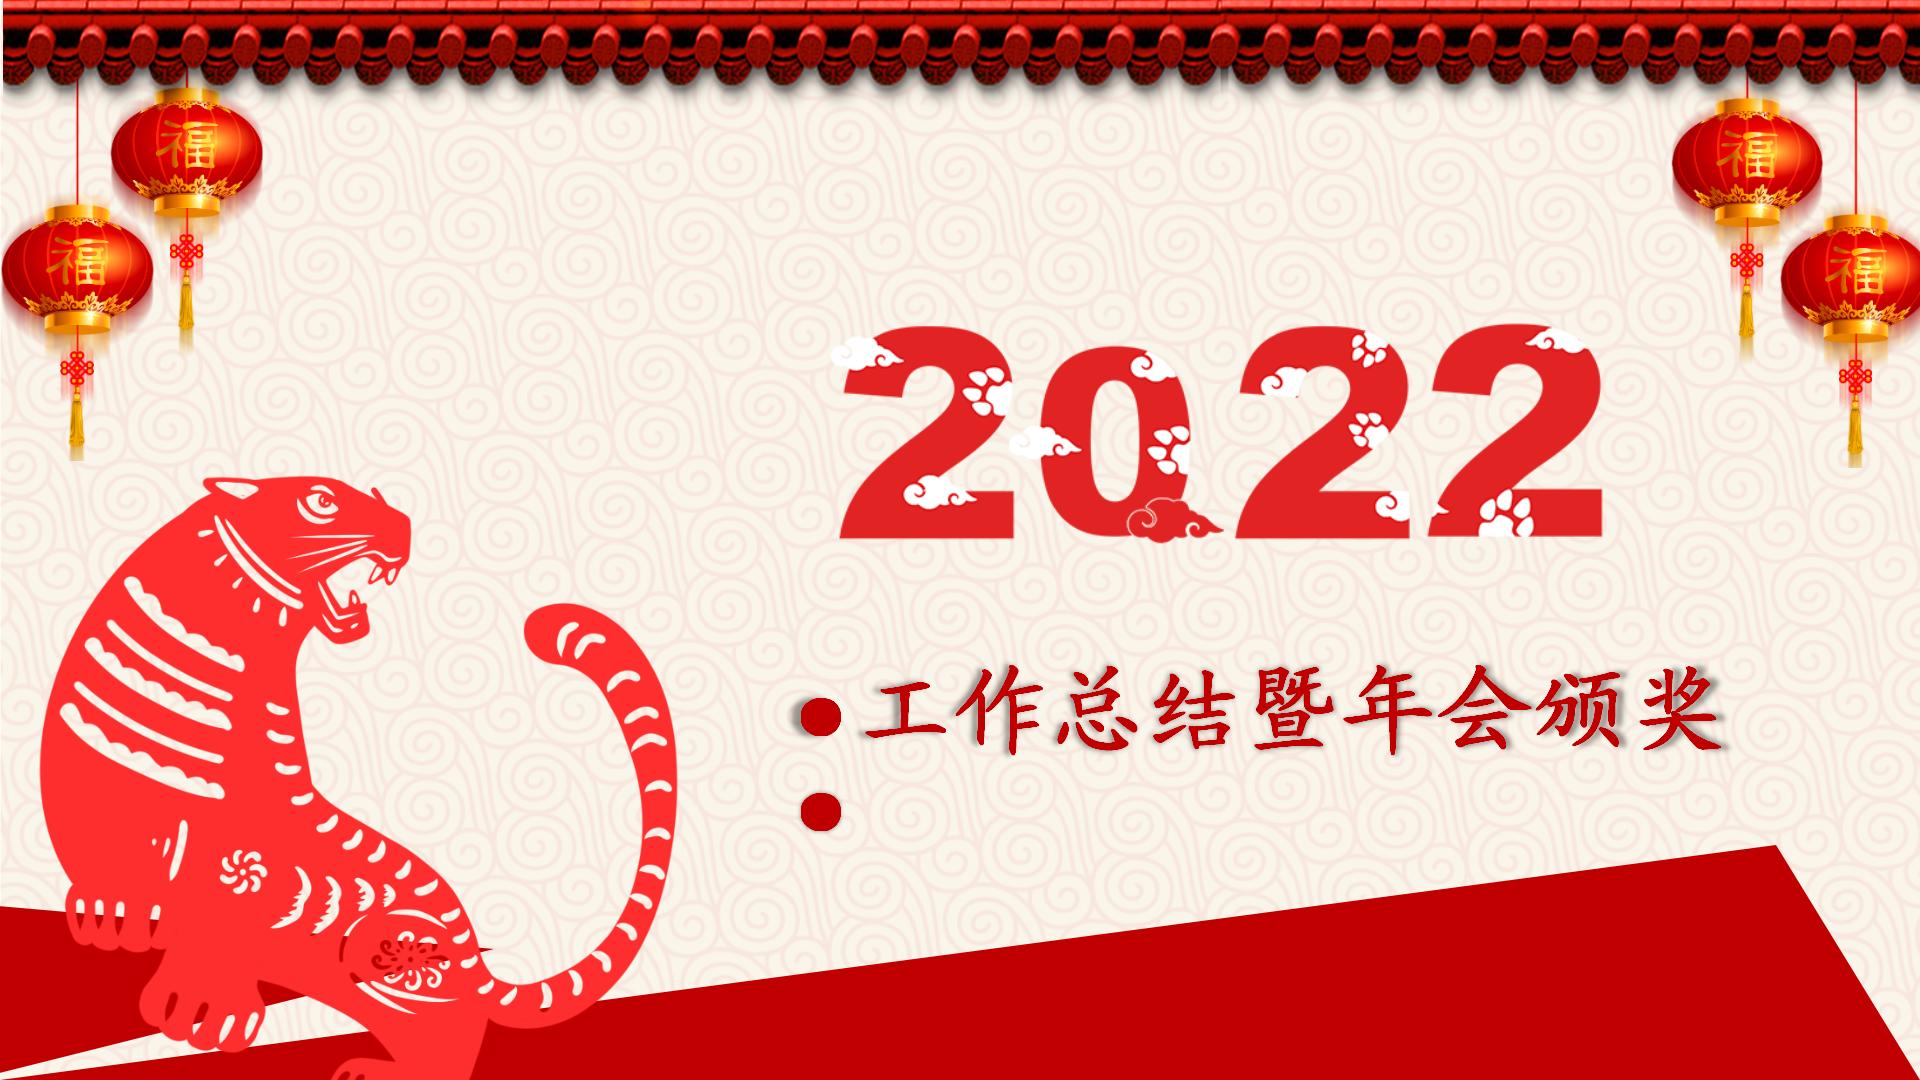 2022中国红剪纸喜庆工作总结暨年会颁奖模板_01.jpg